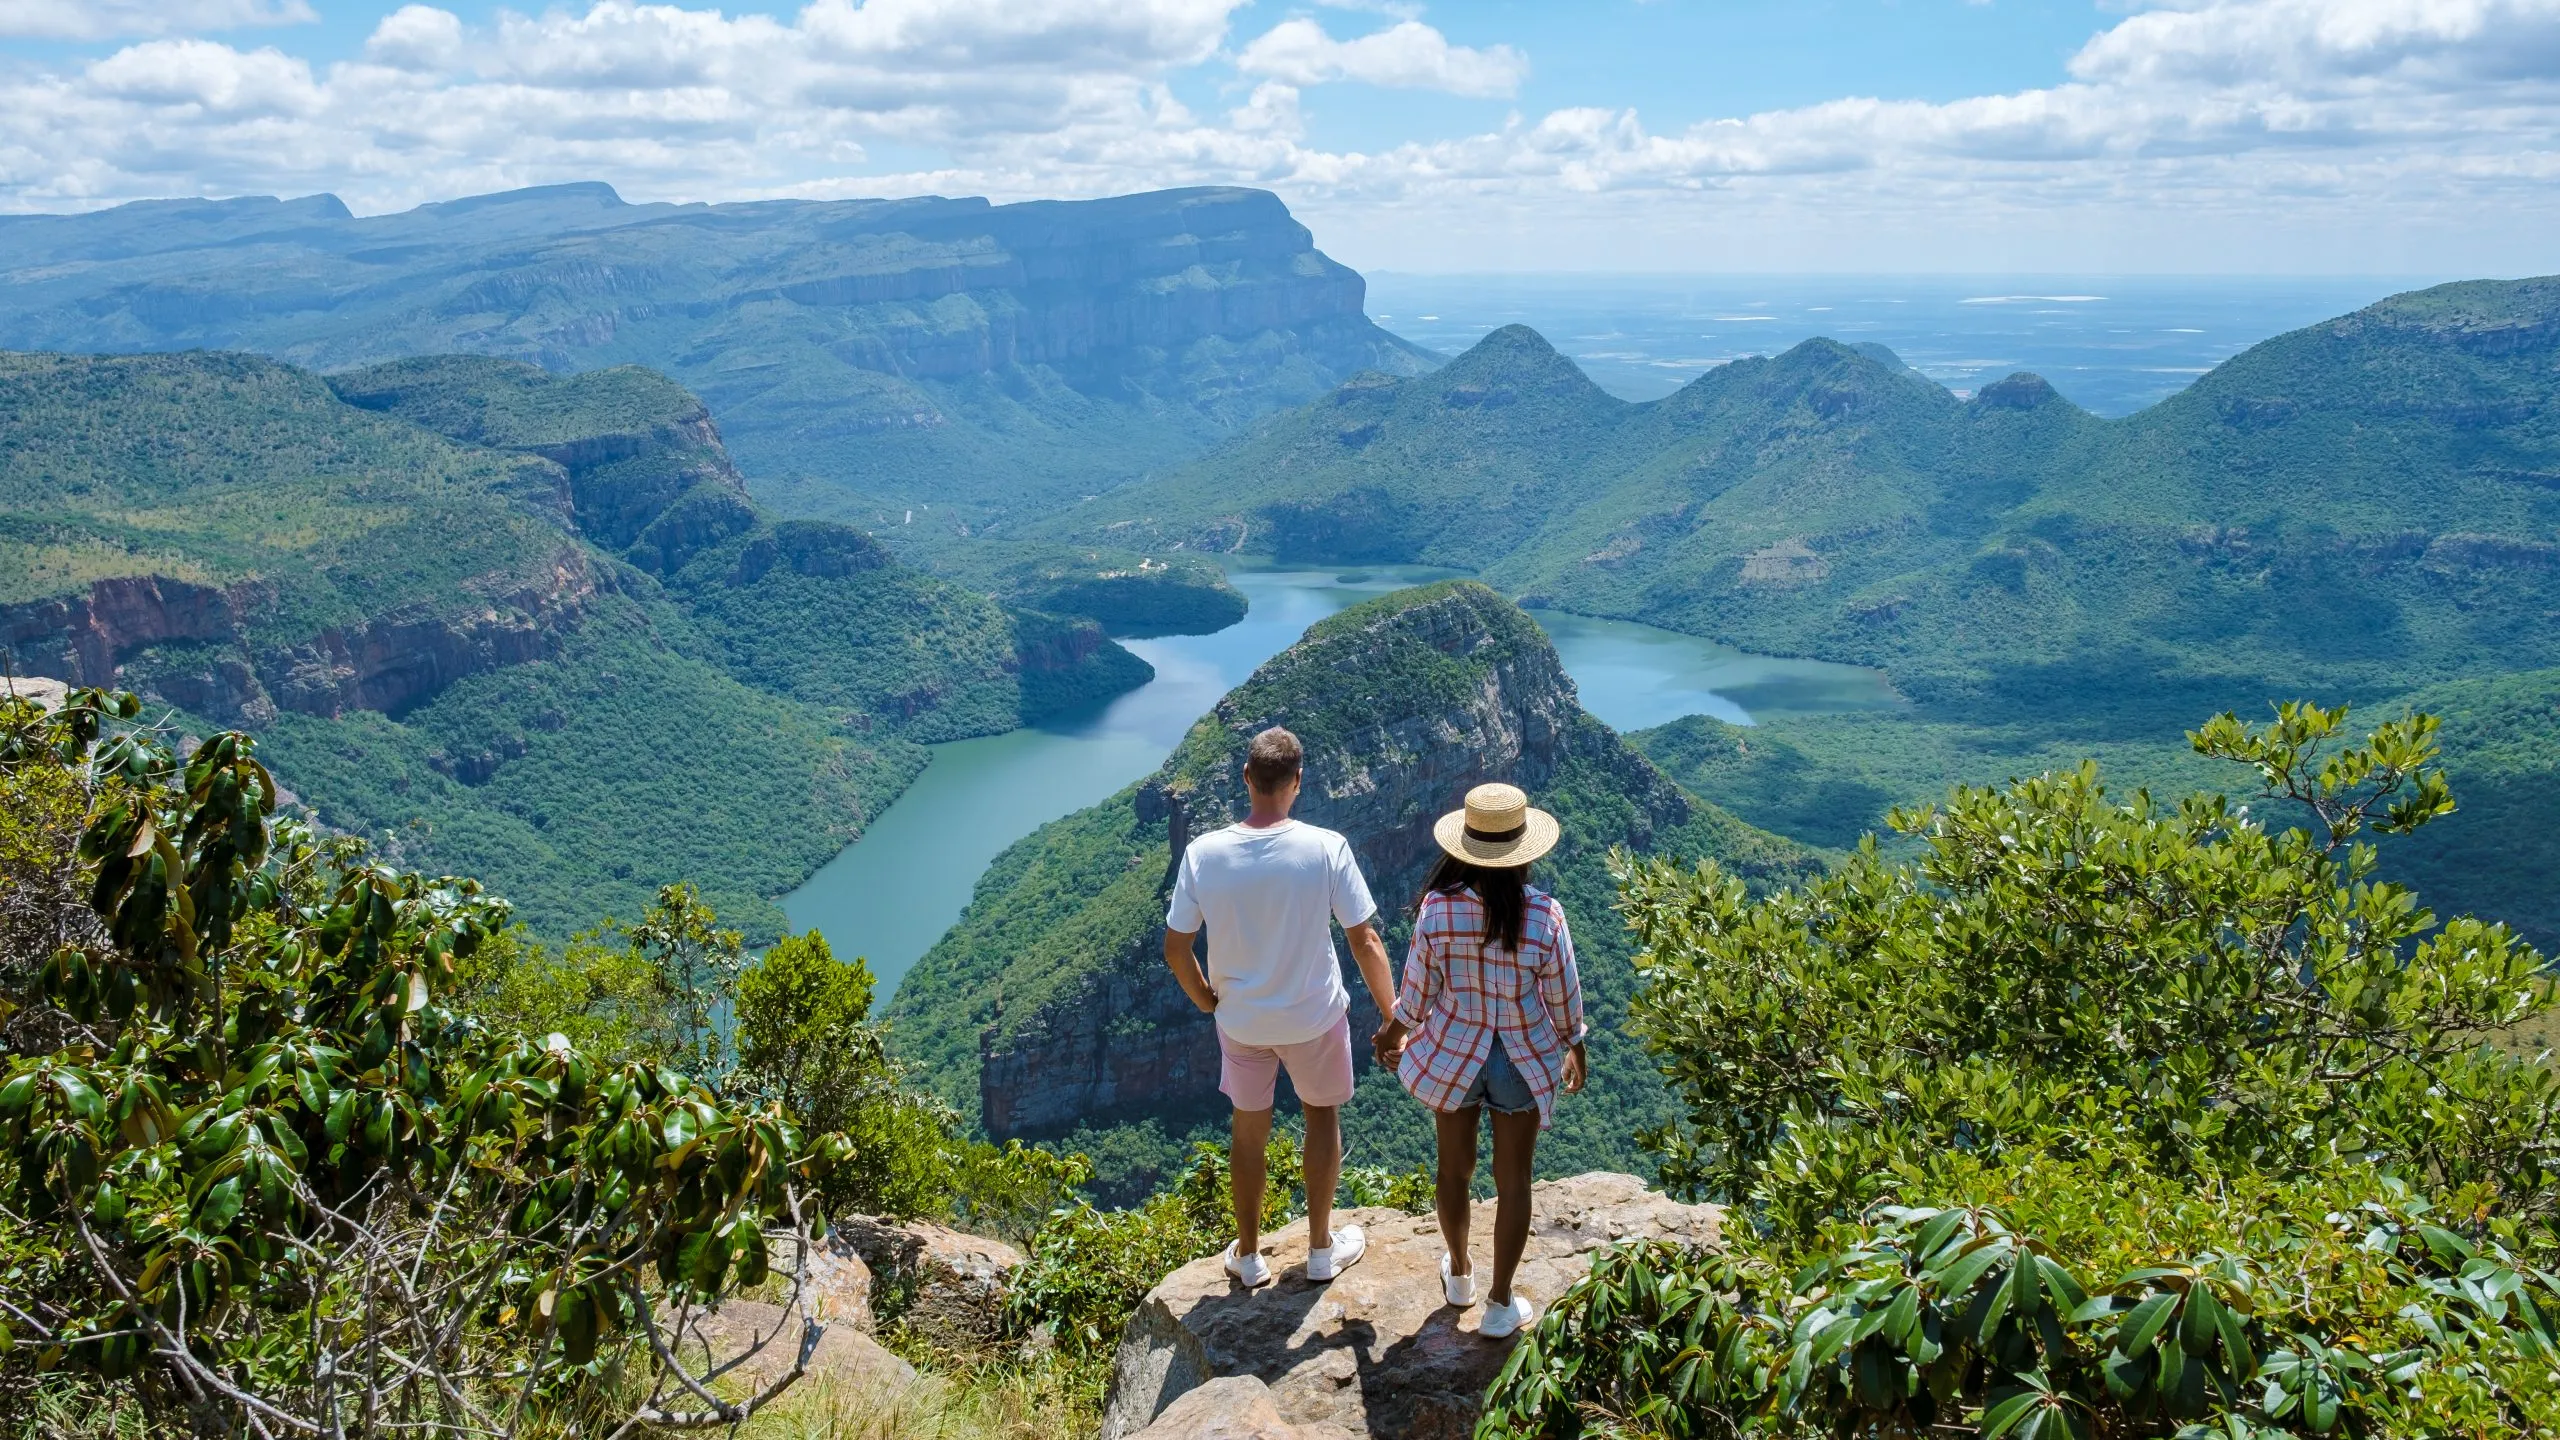 Panoramaroute Zuid-Afrika, canyon van de Blyde rivier met de drie rondavels, uitzicht op drie rondavels en de canyon van de Blyde rivier in Zuid-Afrika. Aziatische vrouwen en blanke mannen op vakantie in Zuid-Afrika